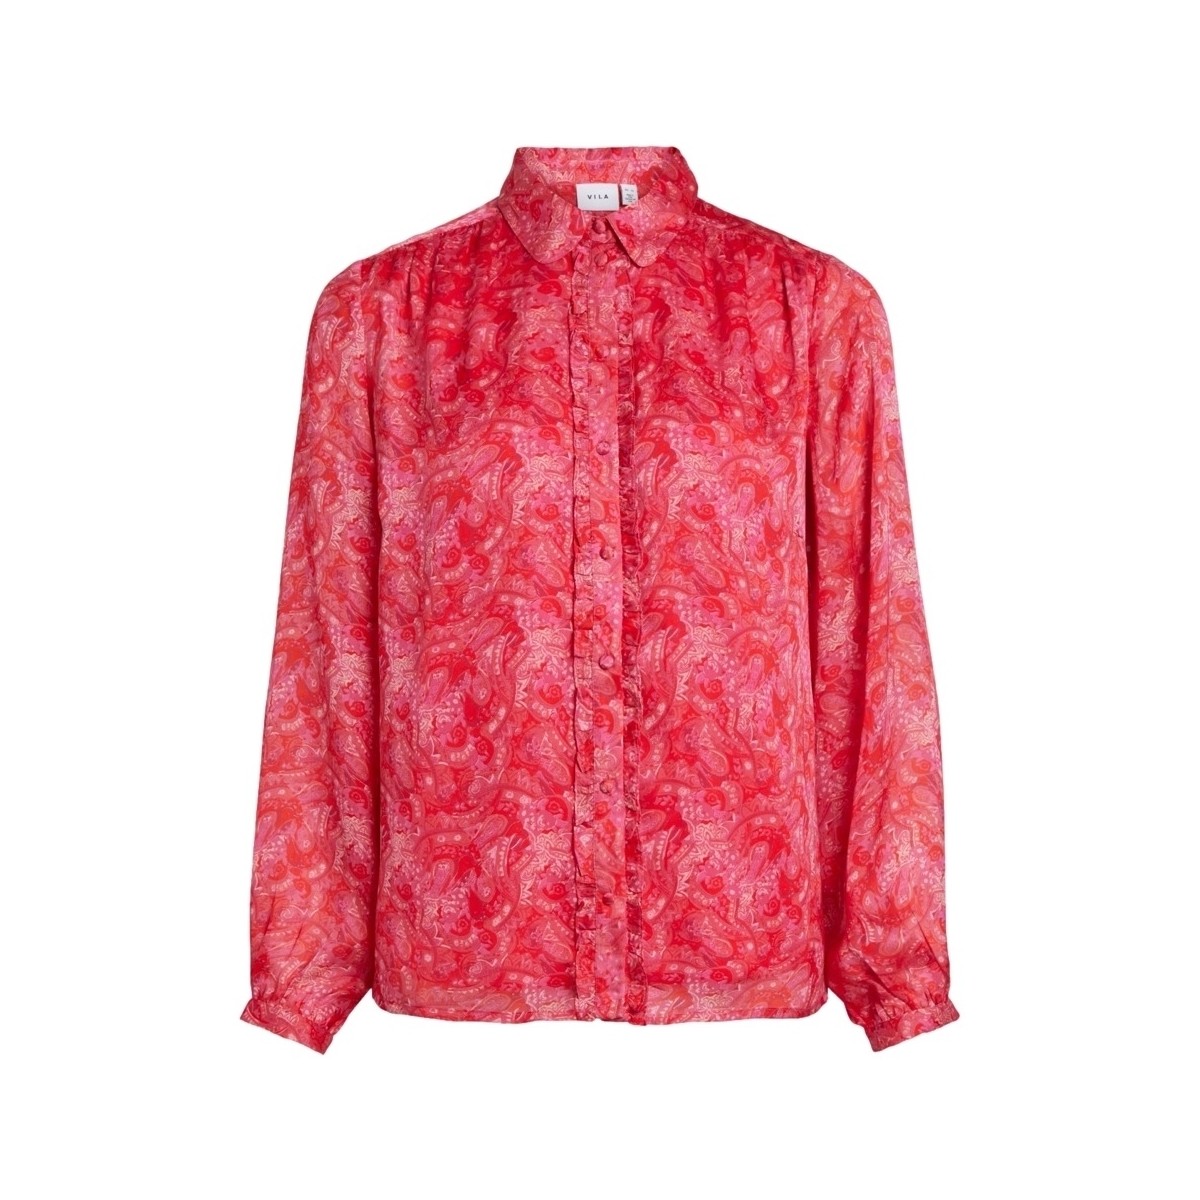 Vêtements Femme Tops / Blouses Vila Shirt Layla Vie L/S - Pink Yarrow Rouge